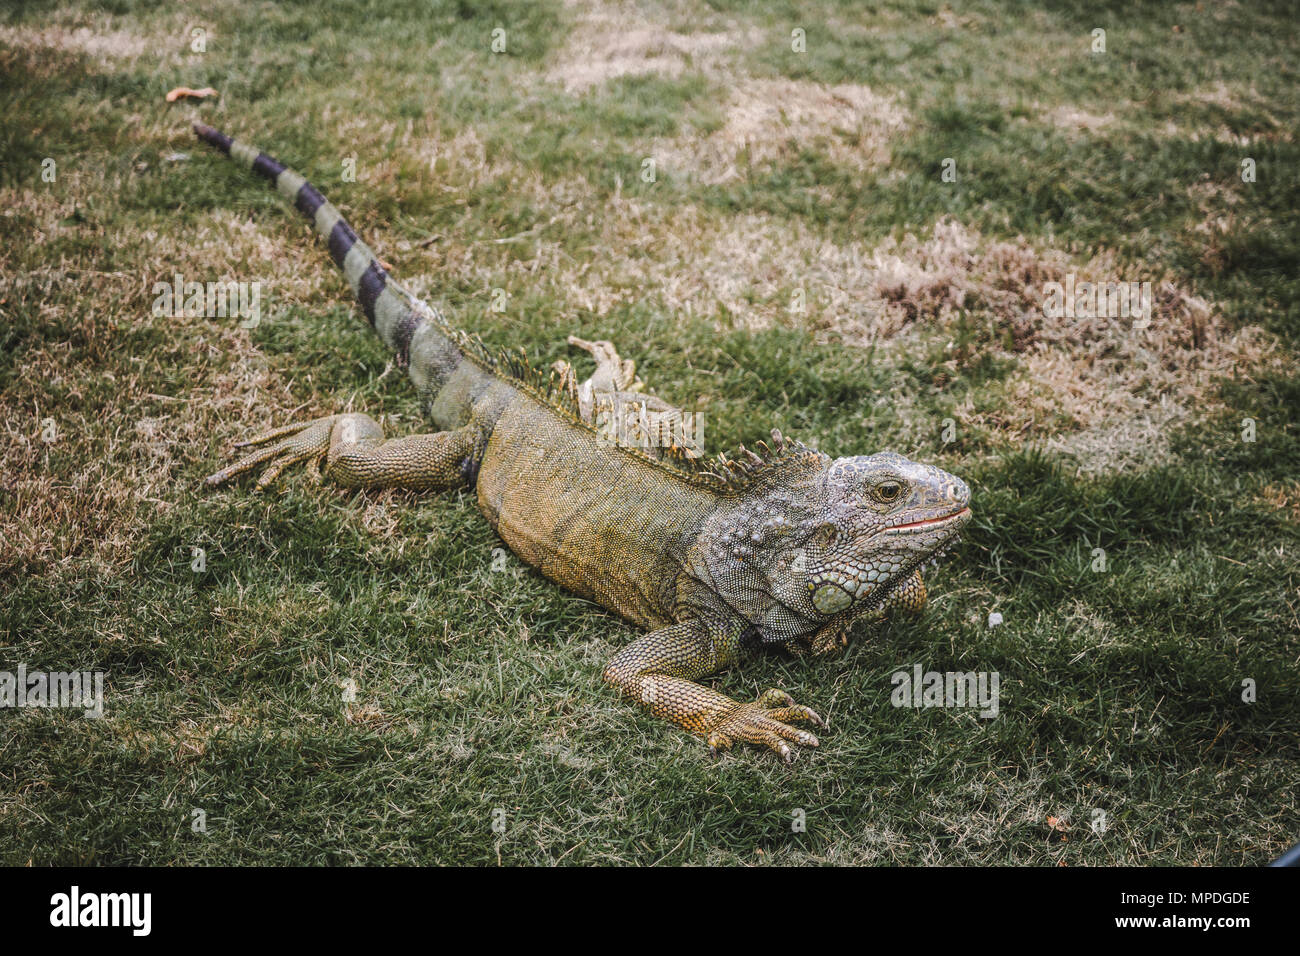 Großes Wild iguana Roaming Freie in der berühmten Parque Senimario, auch bekannt als Iguana Park, in Guayaquil, Ecuador Stockfoto